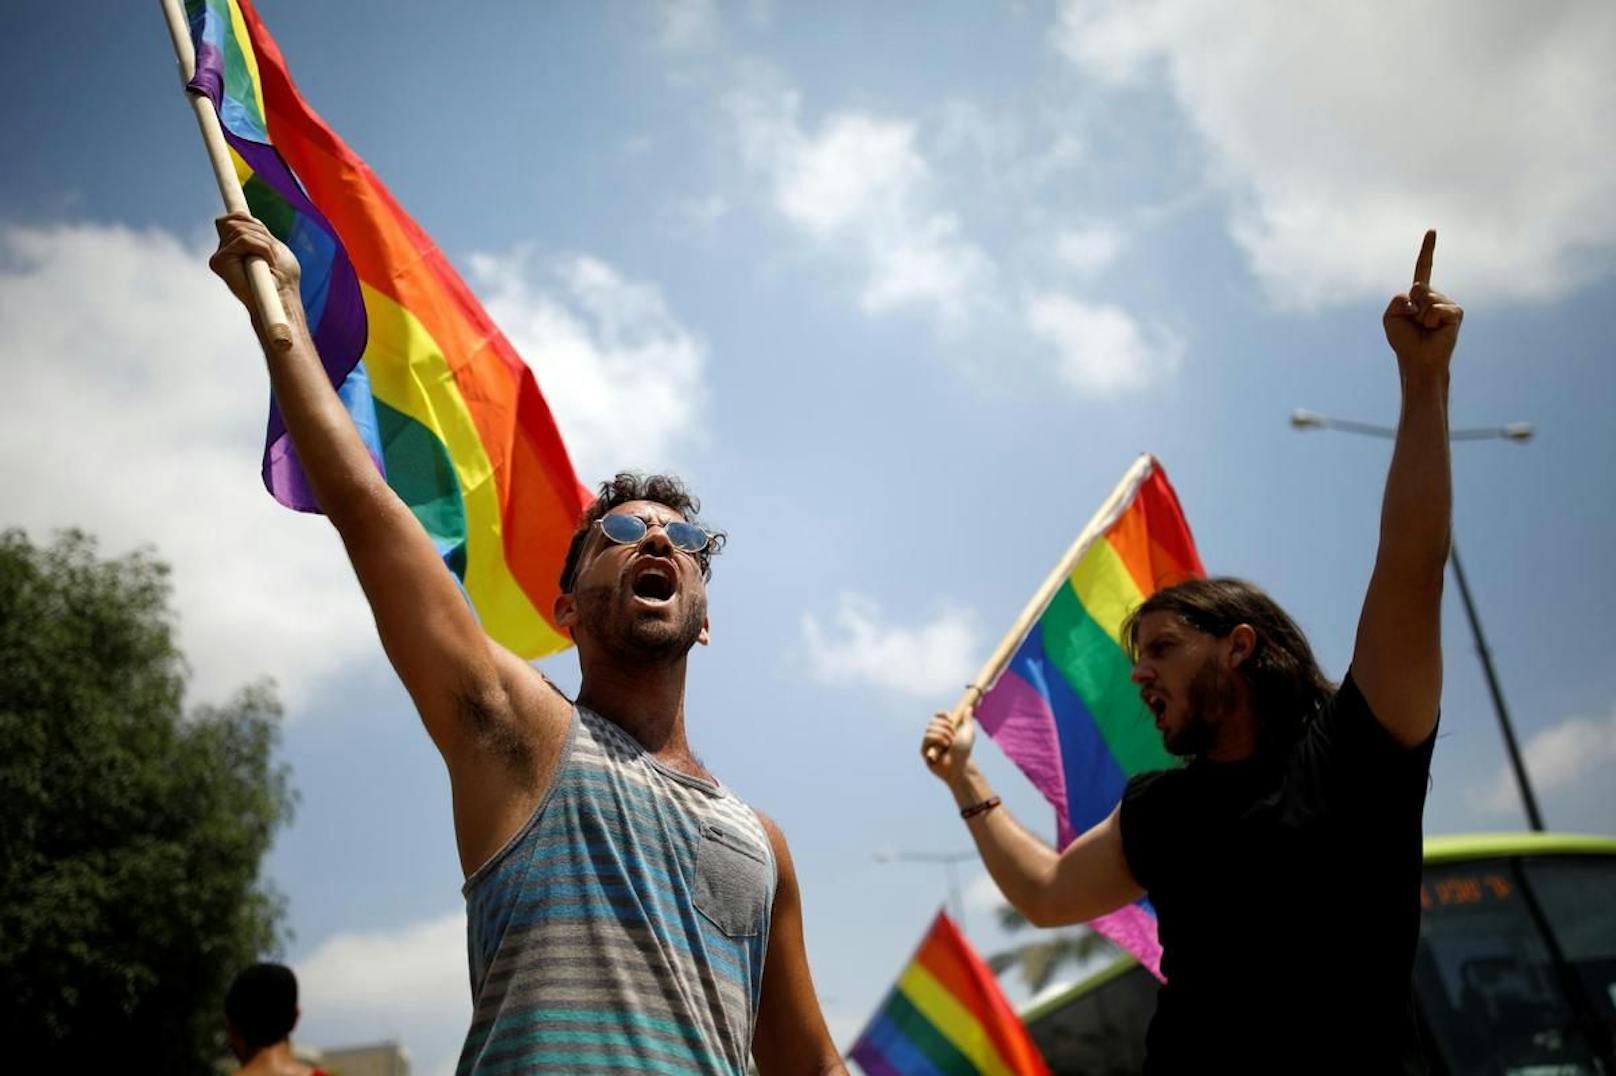 Hacker aus dem Iran haben die israelische LGBT-Datingplattform Atraf angegriffen. Sie drohen damit, die Datensätze der Nutzerinnen und Nutzer zu veröffentlichen.